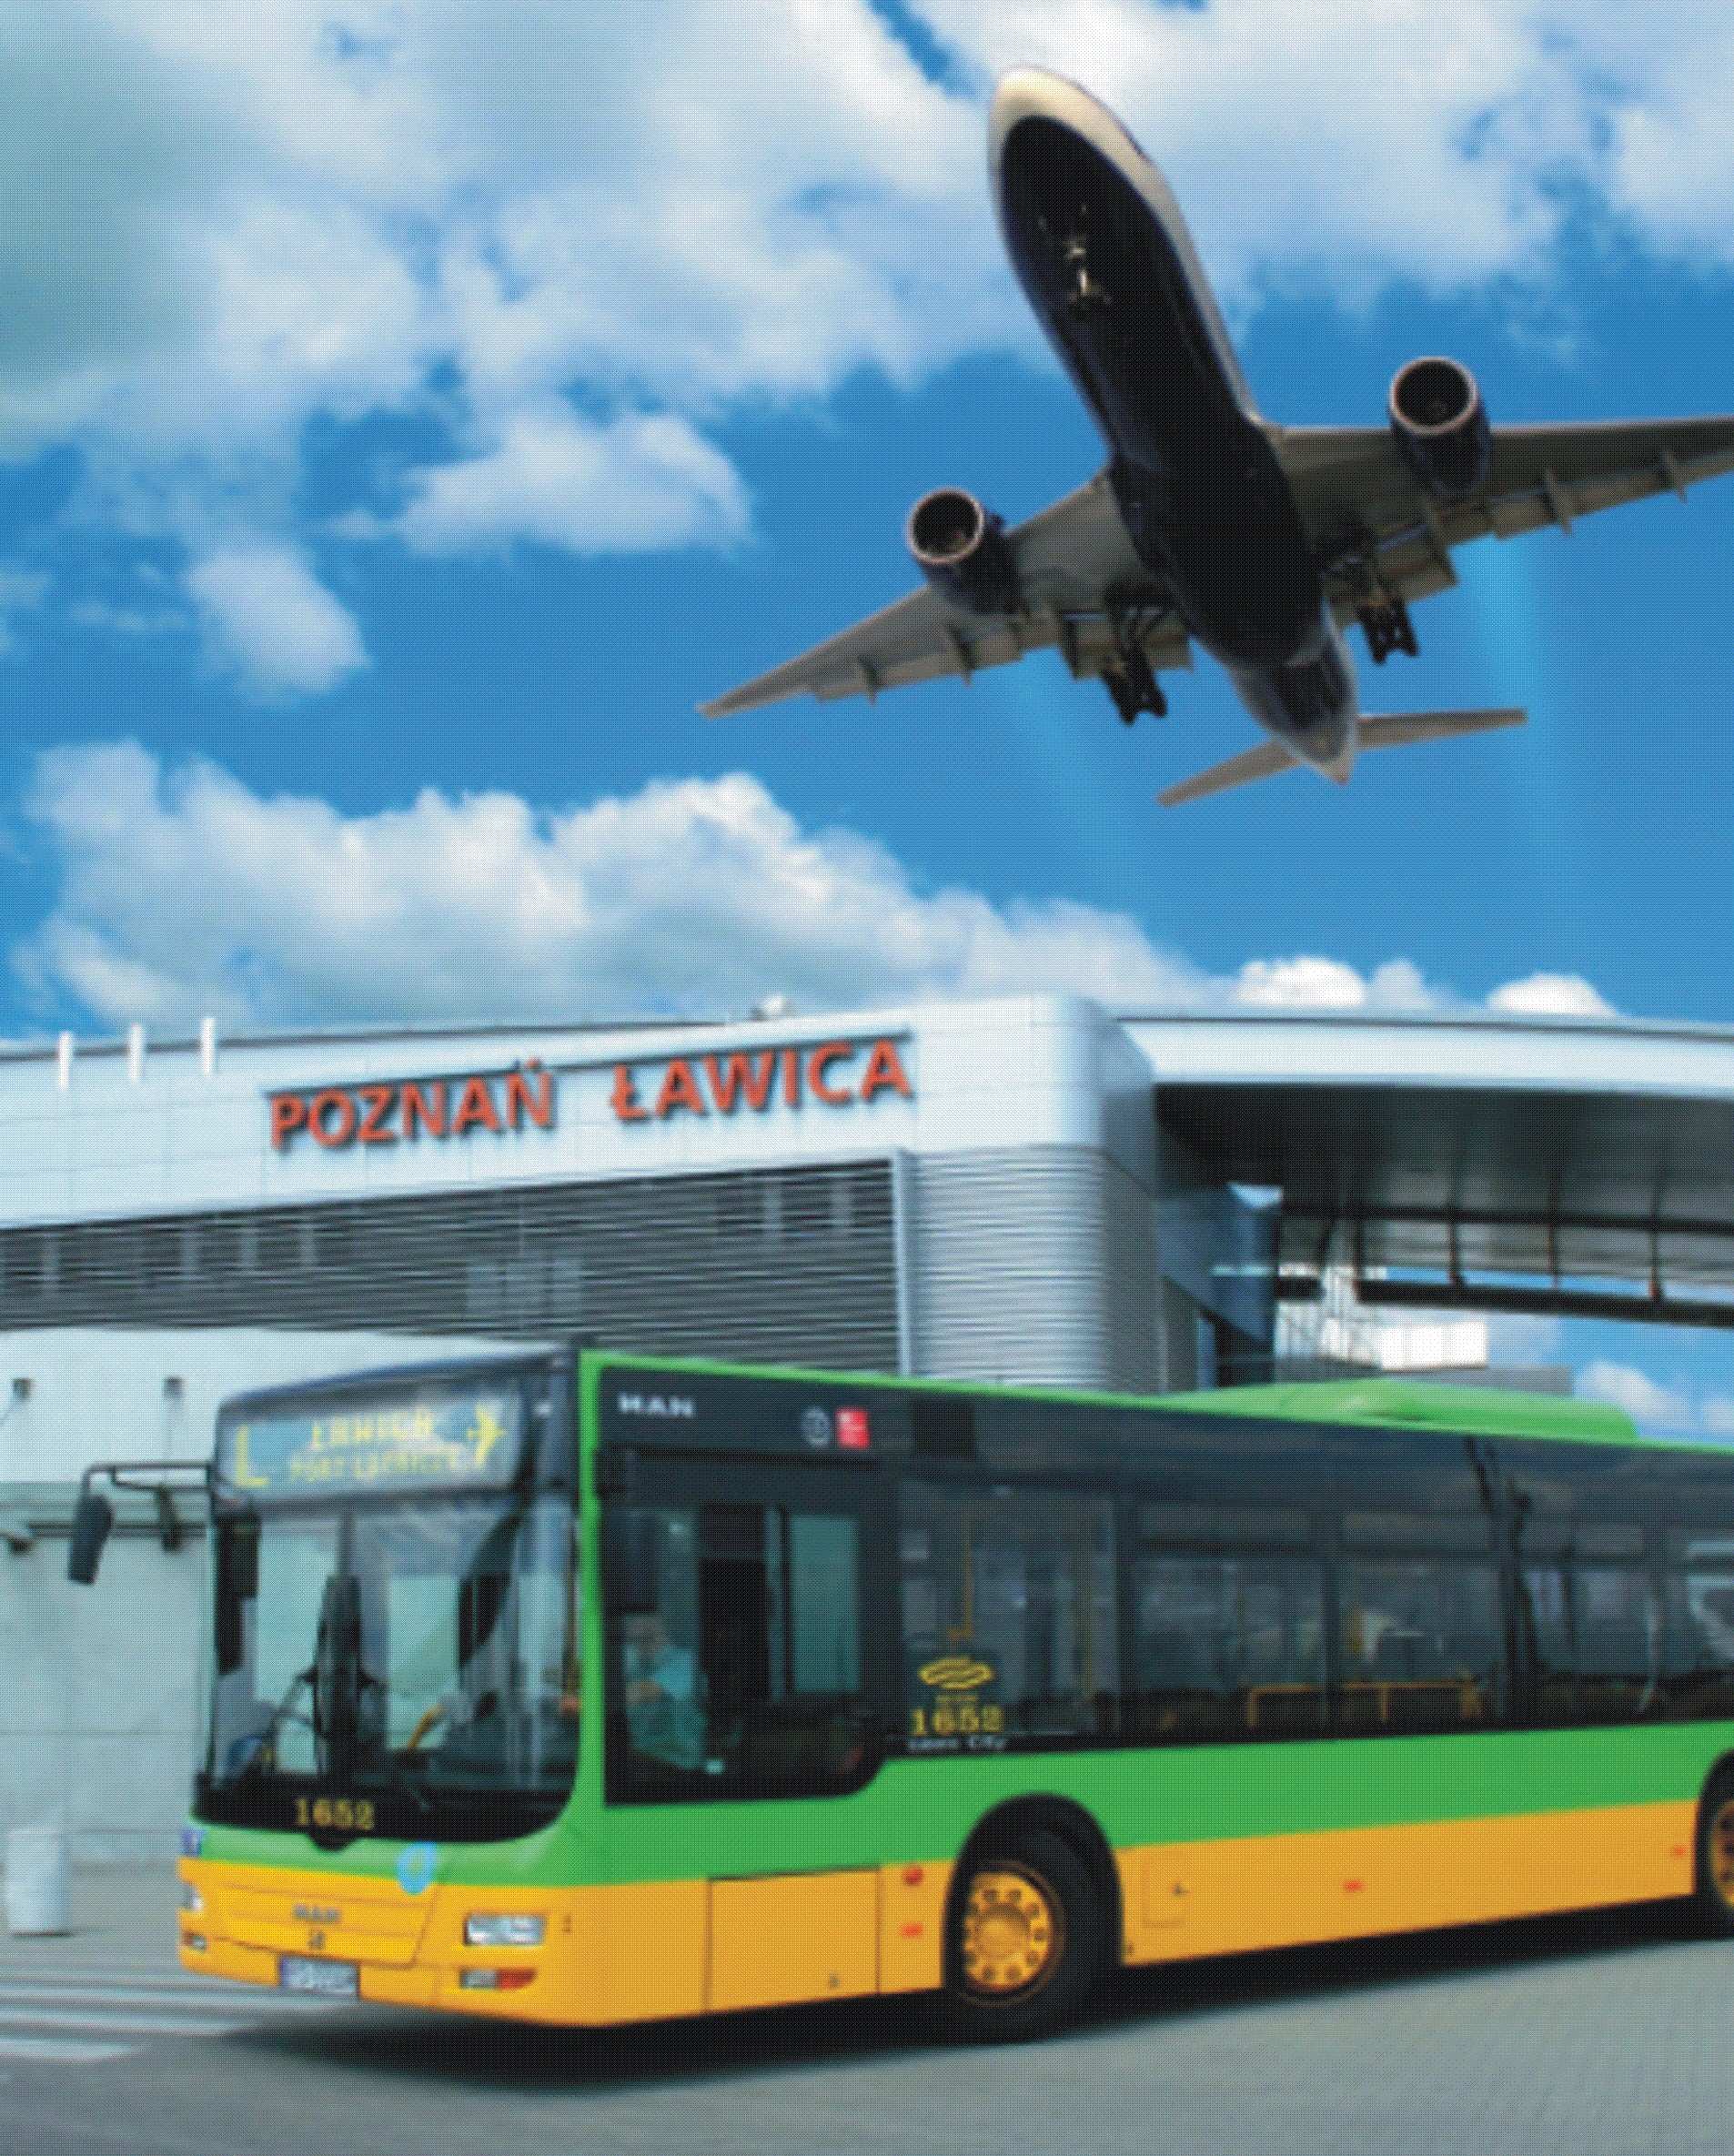 Transport Port Lotniczy Ławica modernizacja lotniska; szybkie i bezkolizyjnej połączenie z centrum miasta; zwiększenie połączeń krajowych (zwłaszcza z Wrocławiem, Gdańskiem i